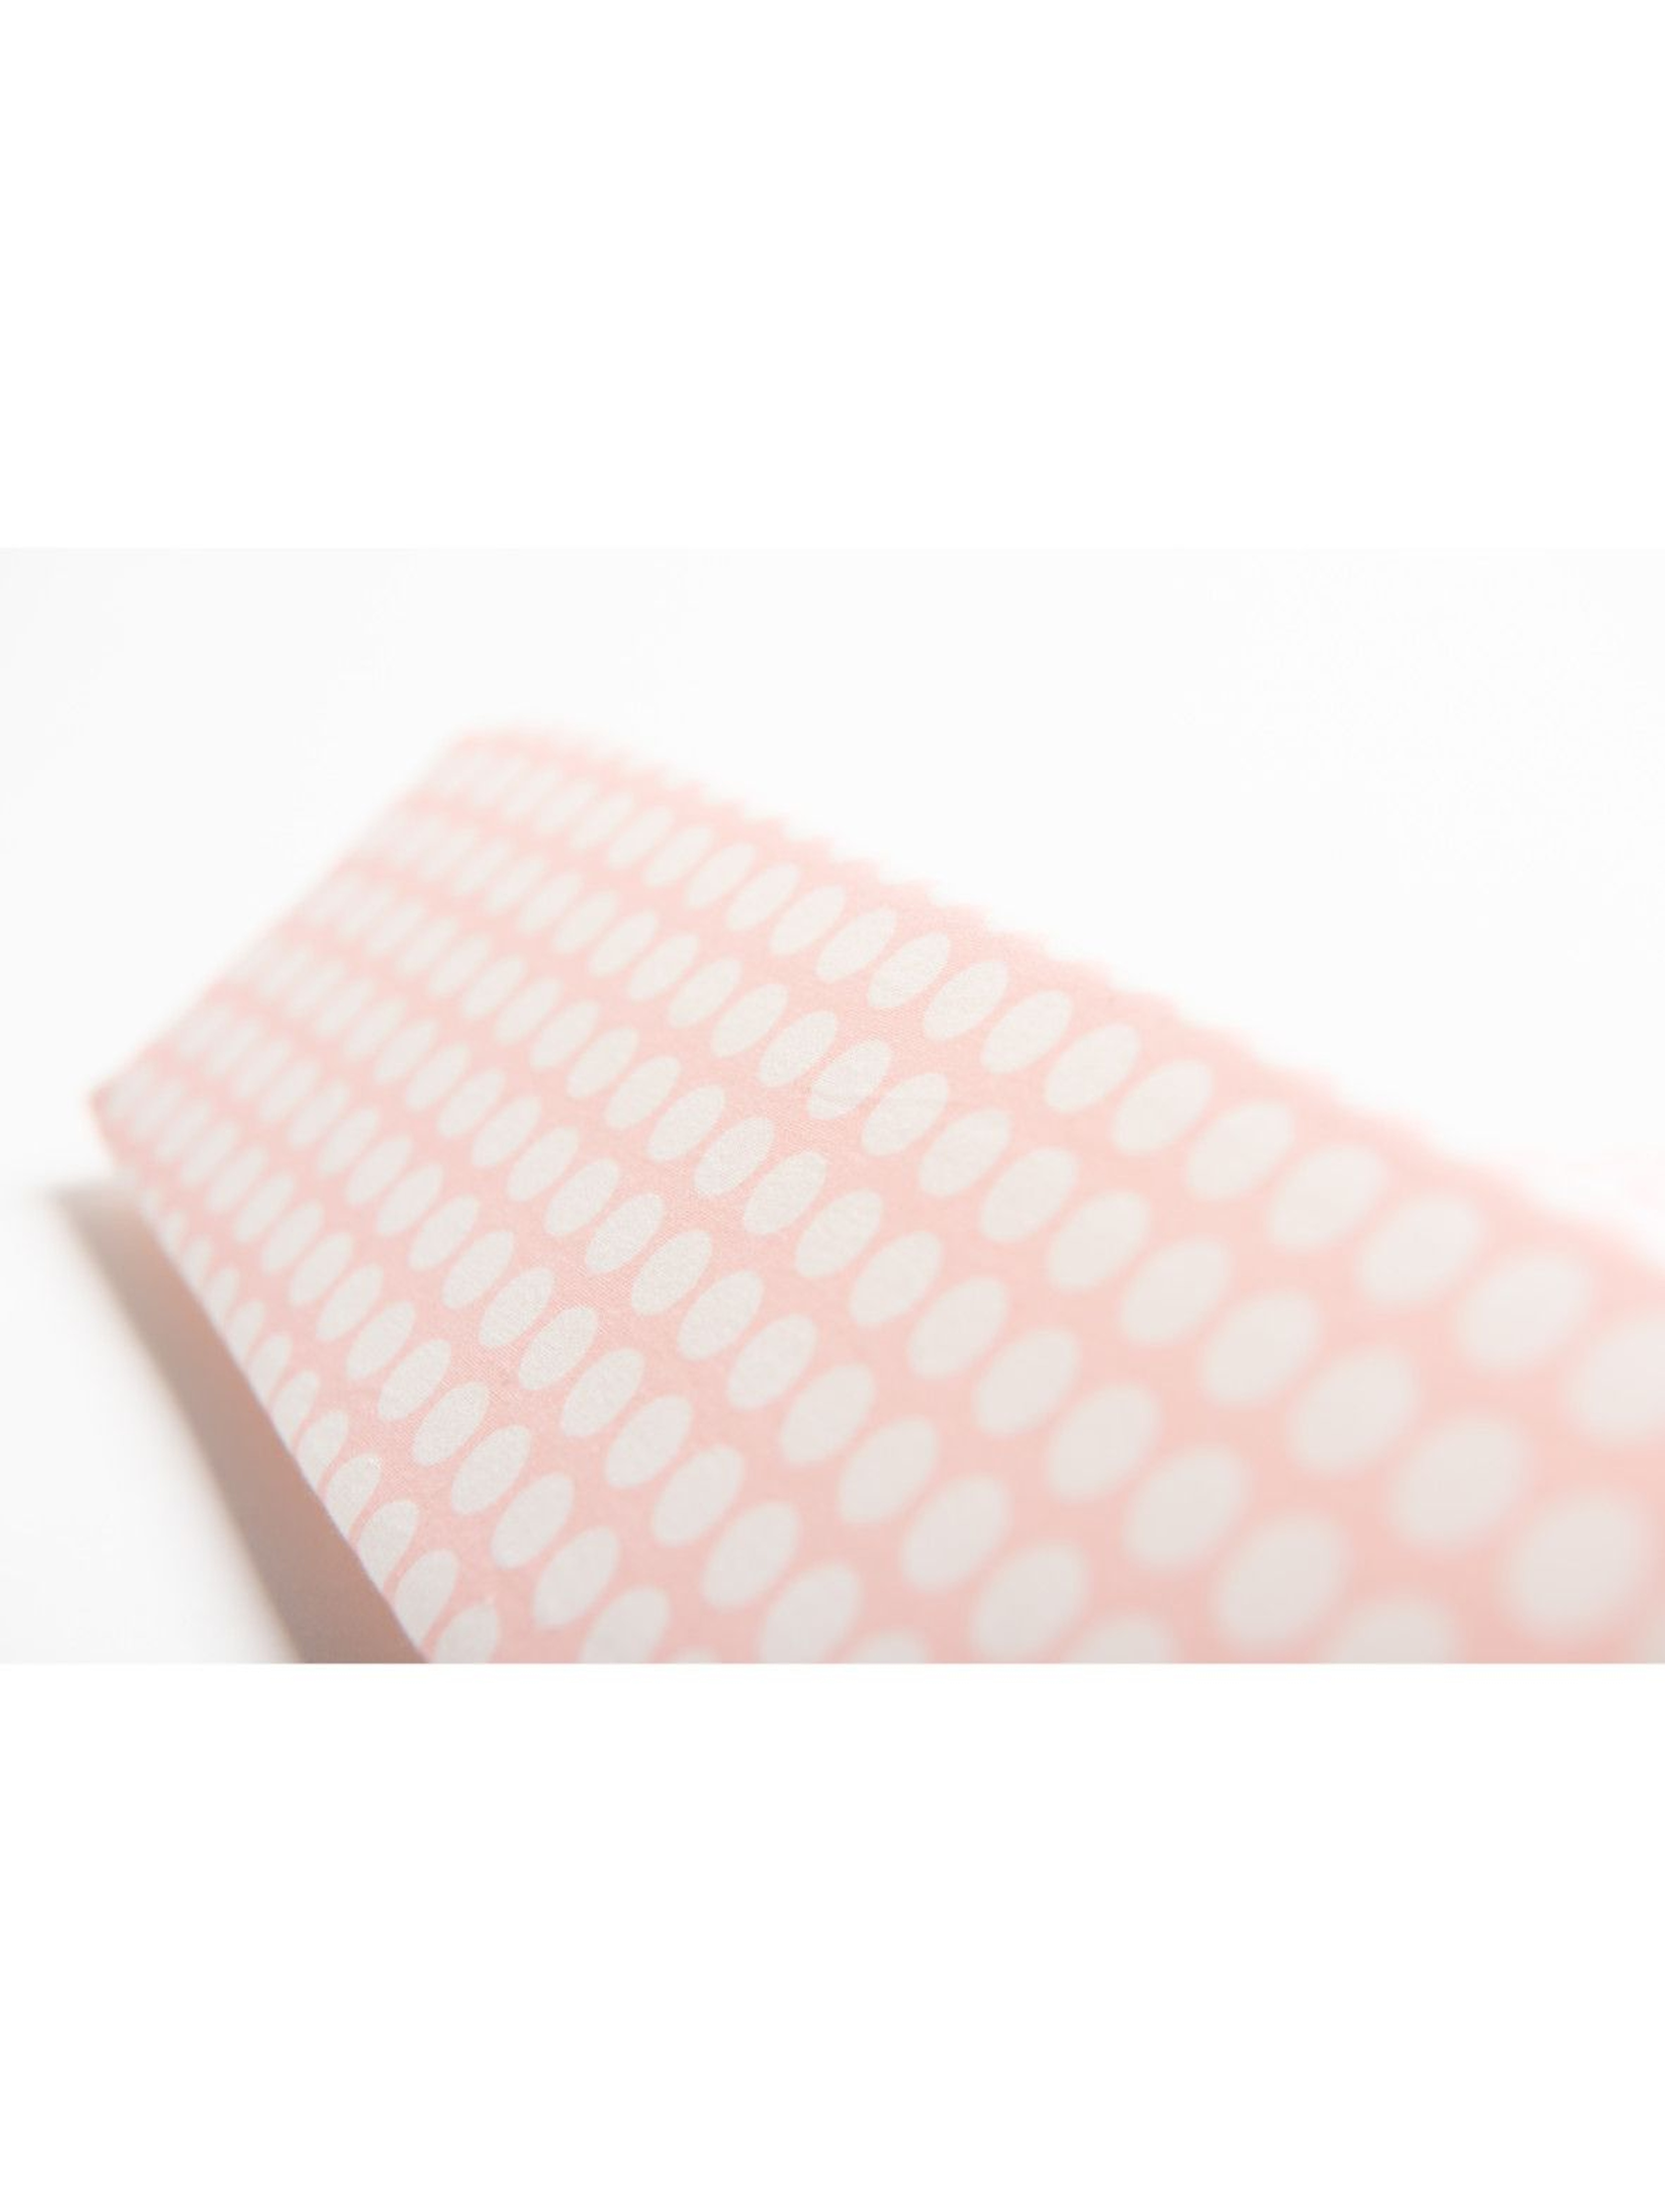 Ogranicznik trójkątny bawełna grochy różowo białe